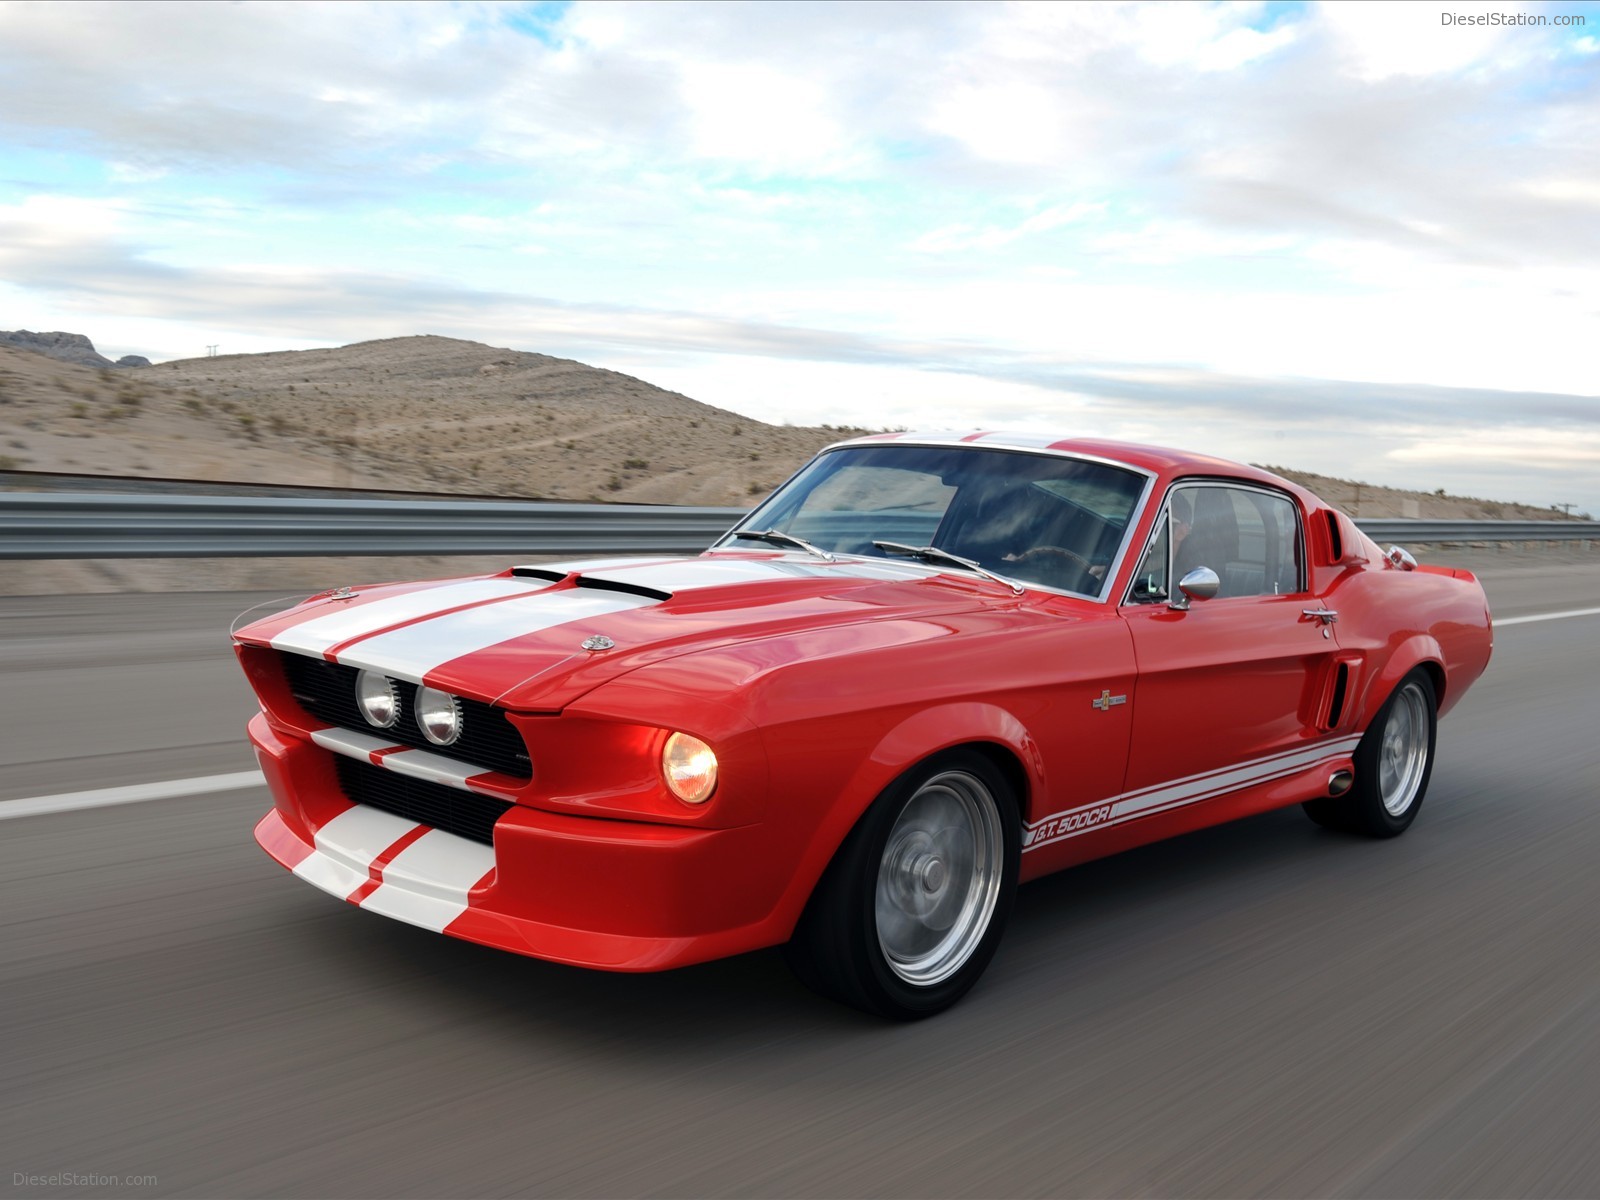 [69+] 1967 Mustang Wallpapers | WallpaperSafari